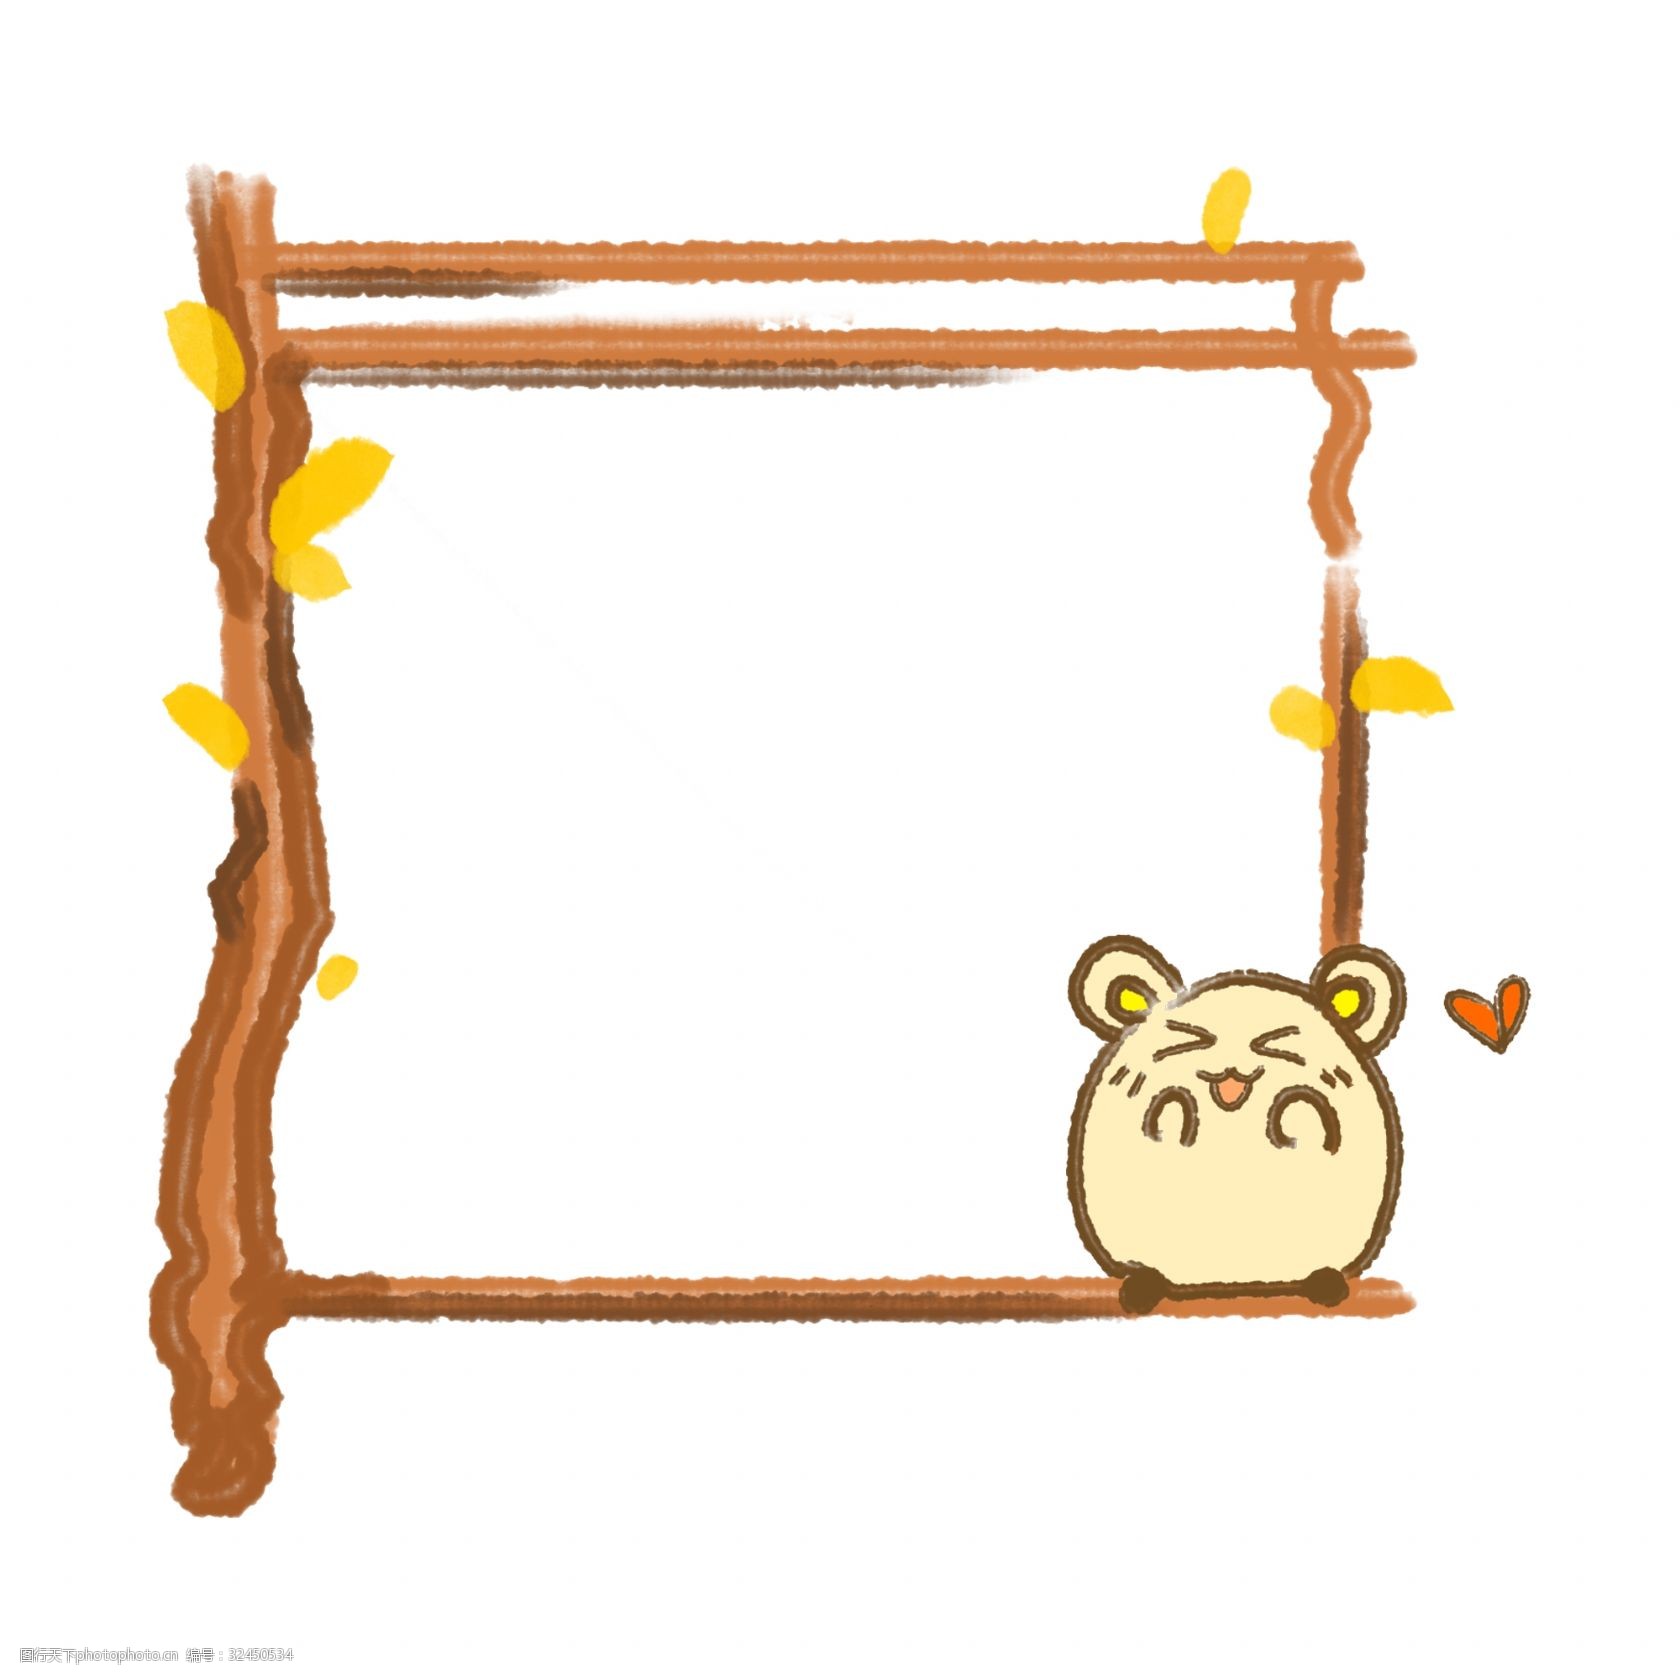 木质的小框 框架 框子 框框 边框插画 卡通插画 可爱小框 边框 漂亮的